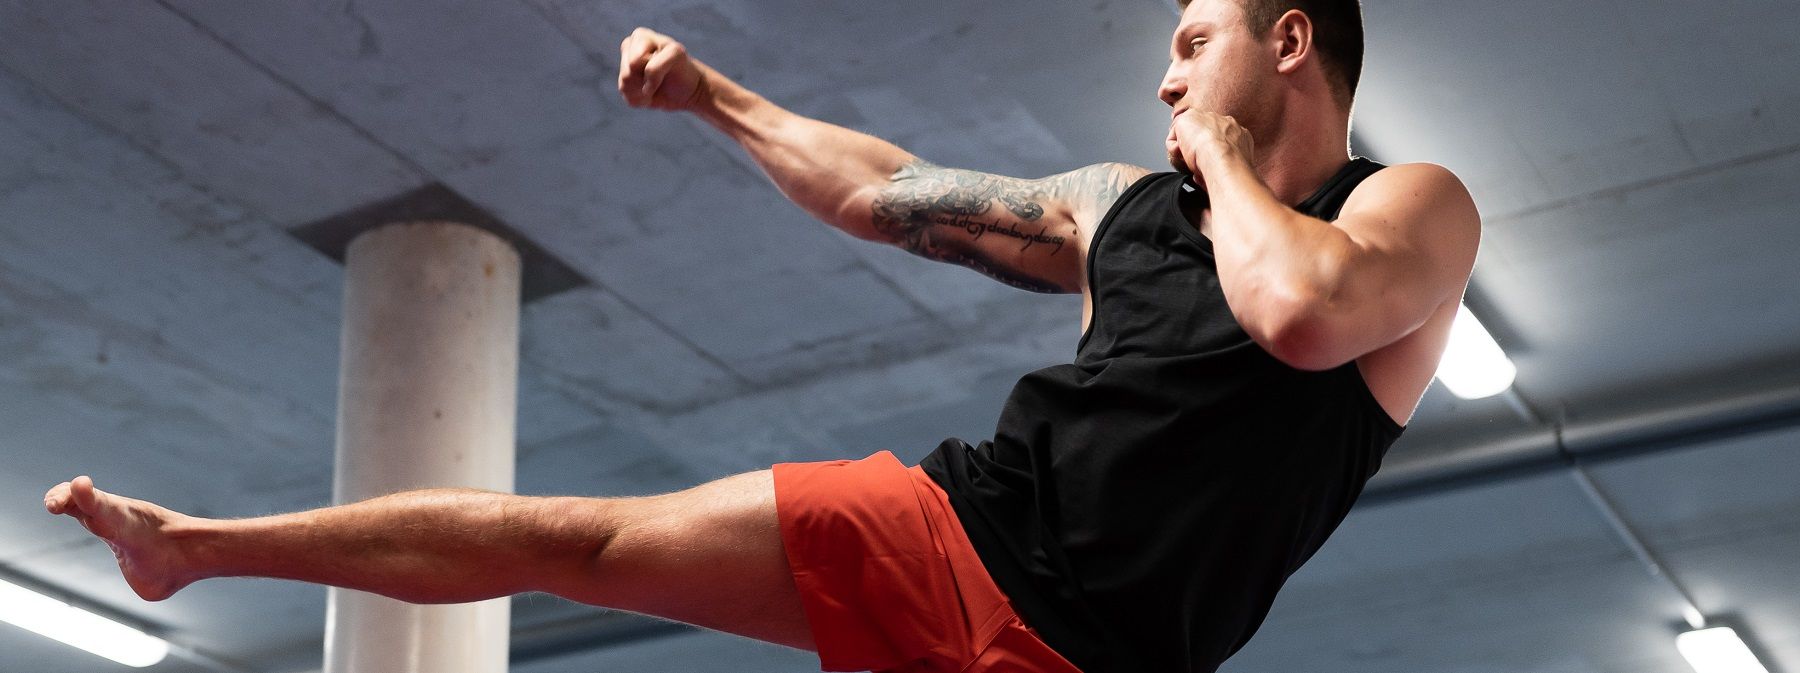 Weiterkämpfen – Interview mit Michael Smolik, dem amtierendem Kickbox-Weltmeister